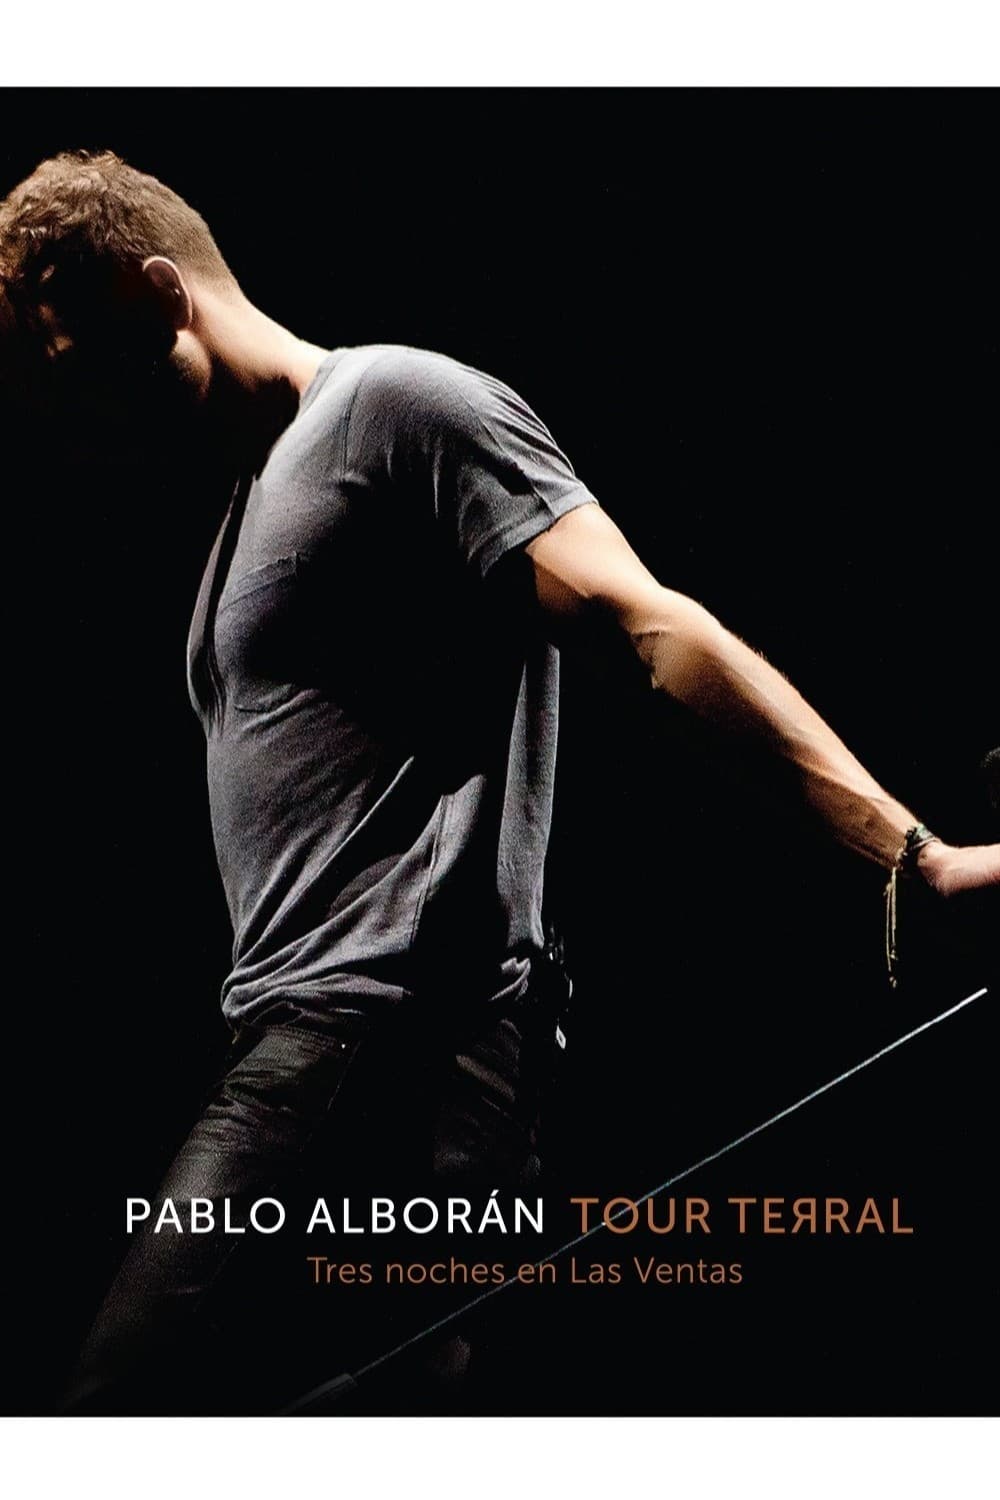 Pablo Alborán - Tour Terral